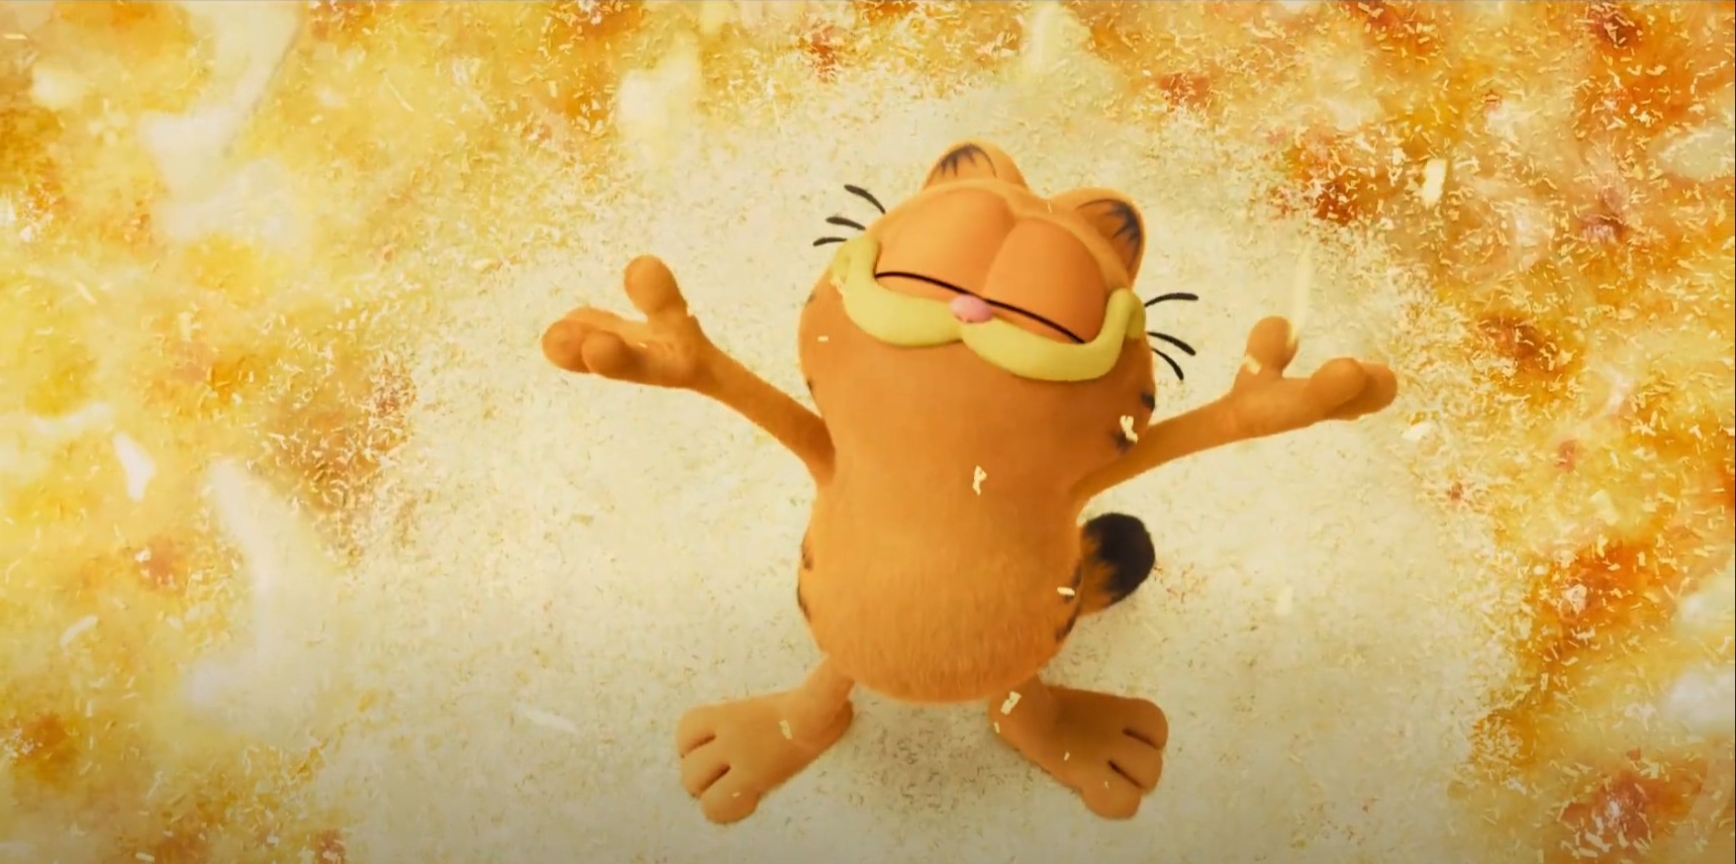 Mèo Béo Garfield tung trailer mới nhất, ấn định ngày ra rạp - ảnh 3